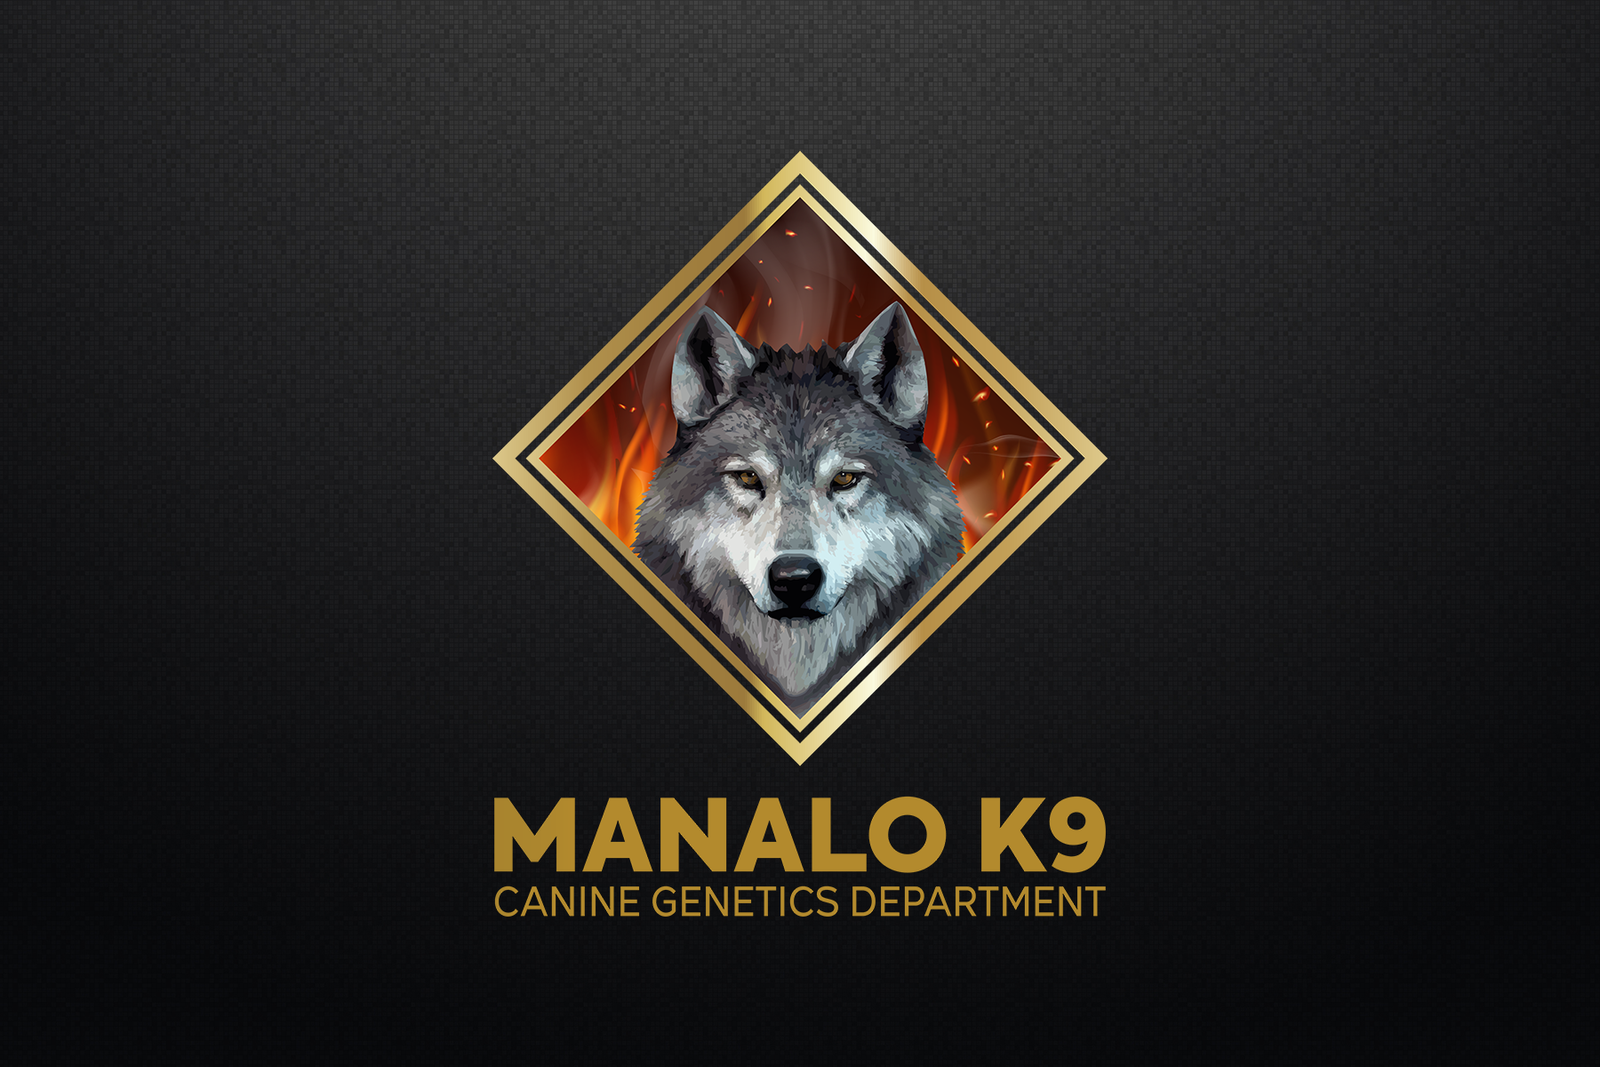 MANALO K9